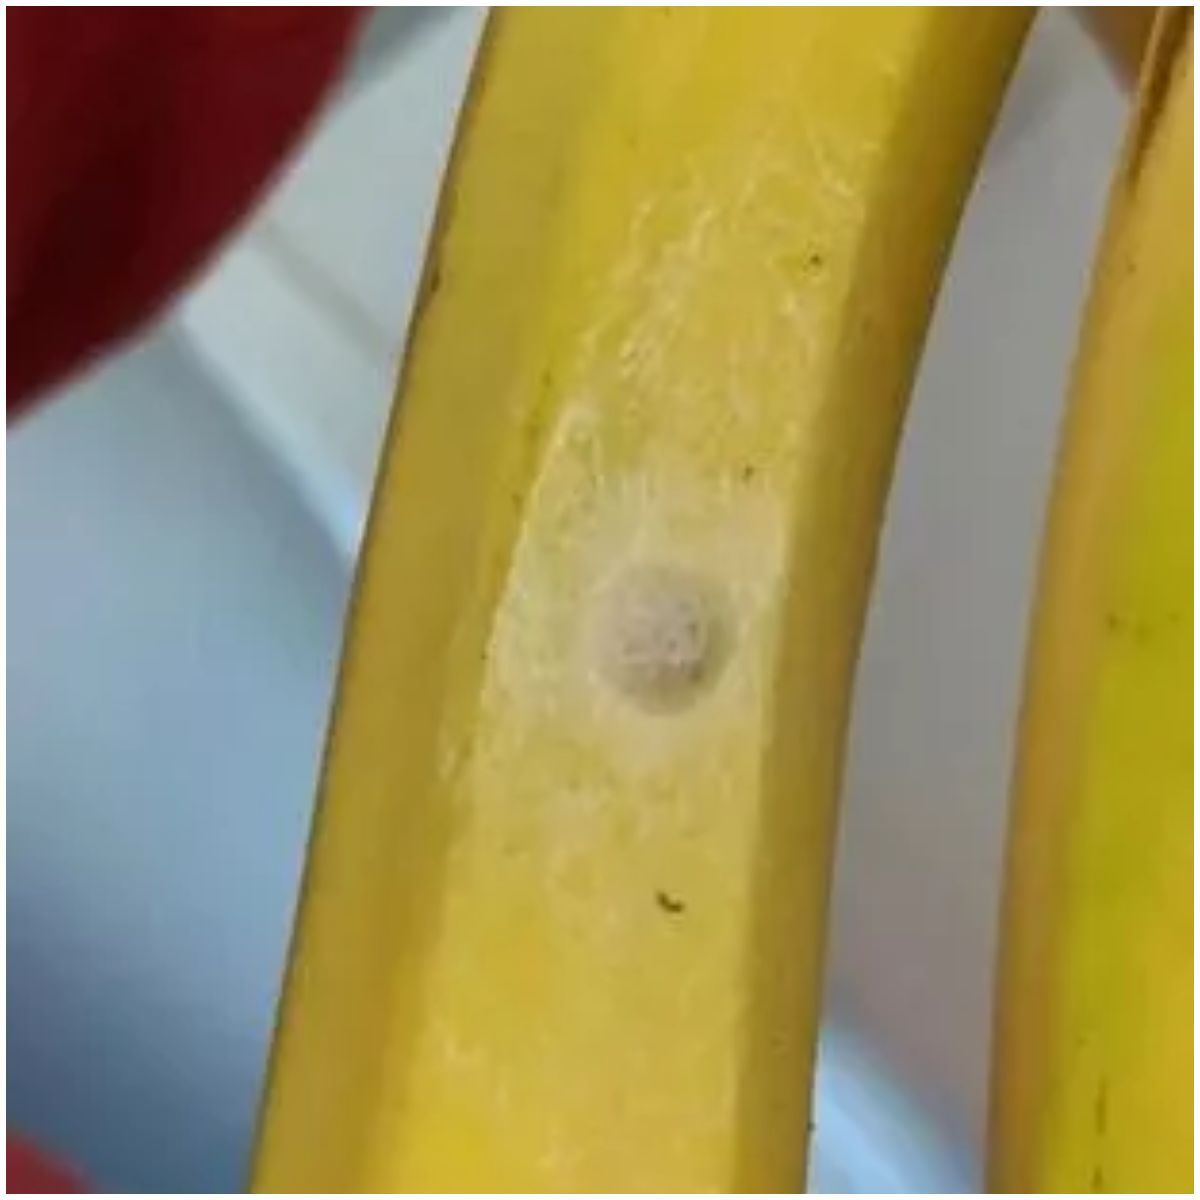 pajak w bananach (1).jpg